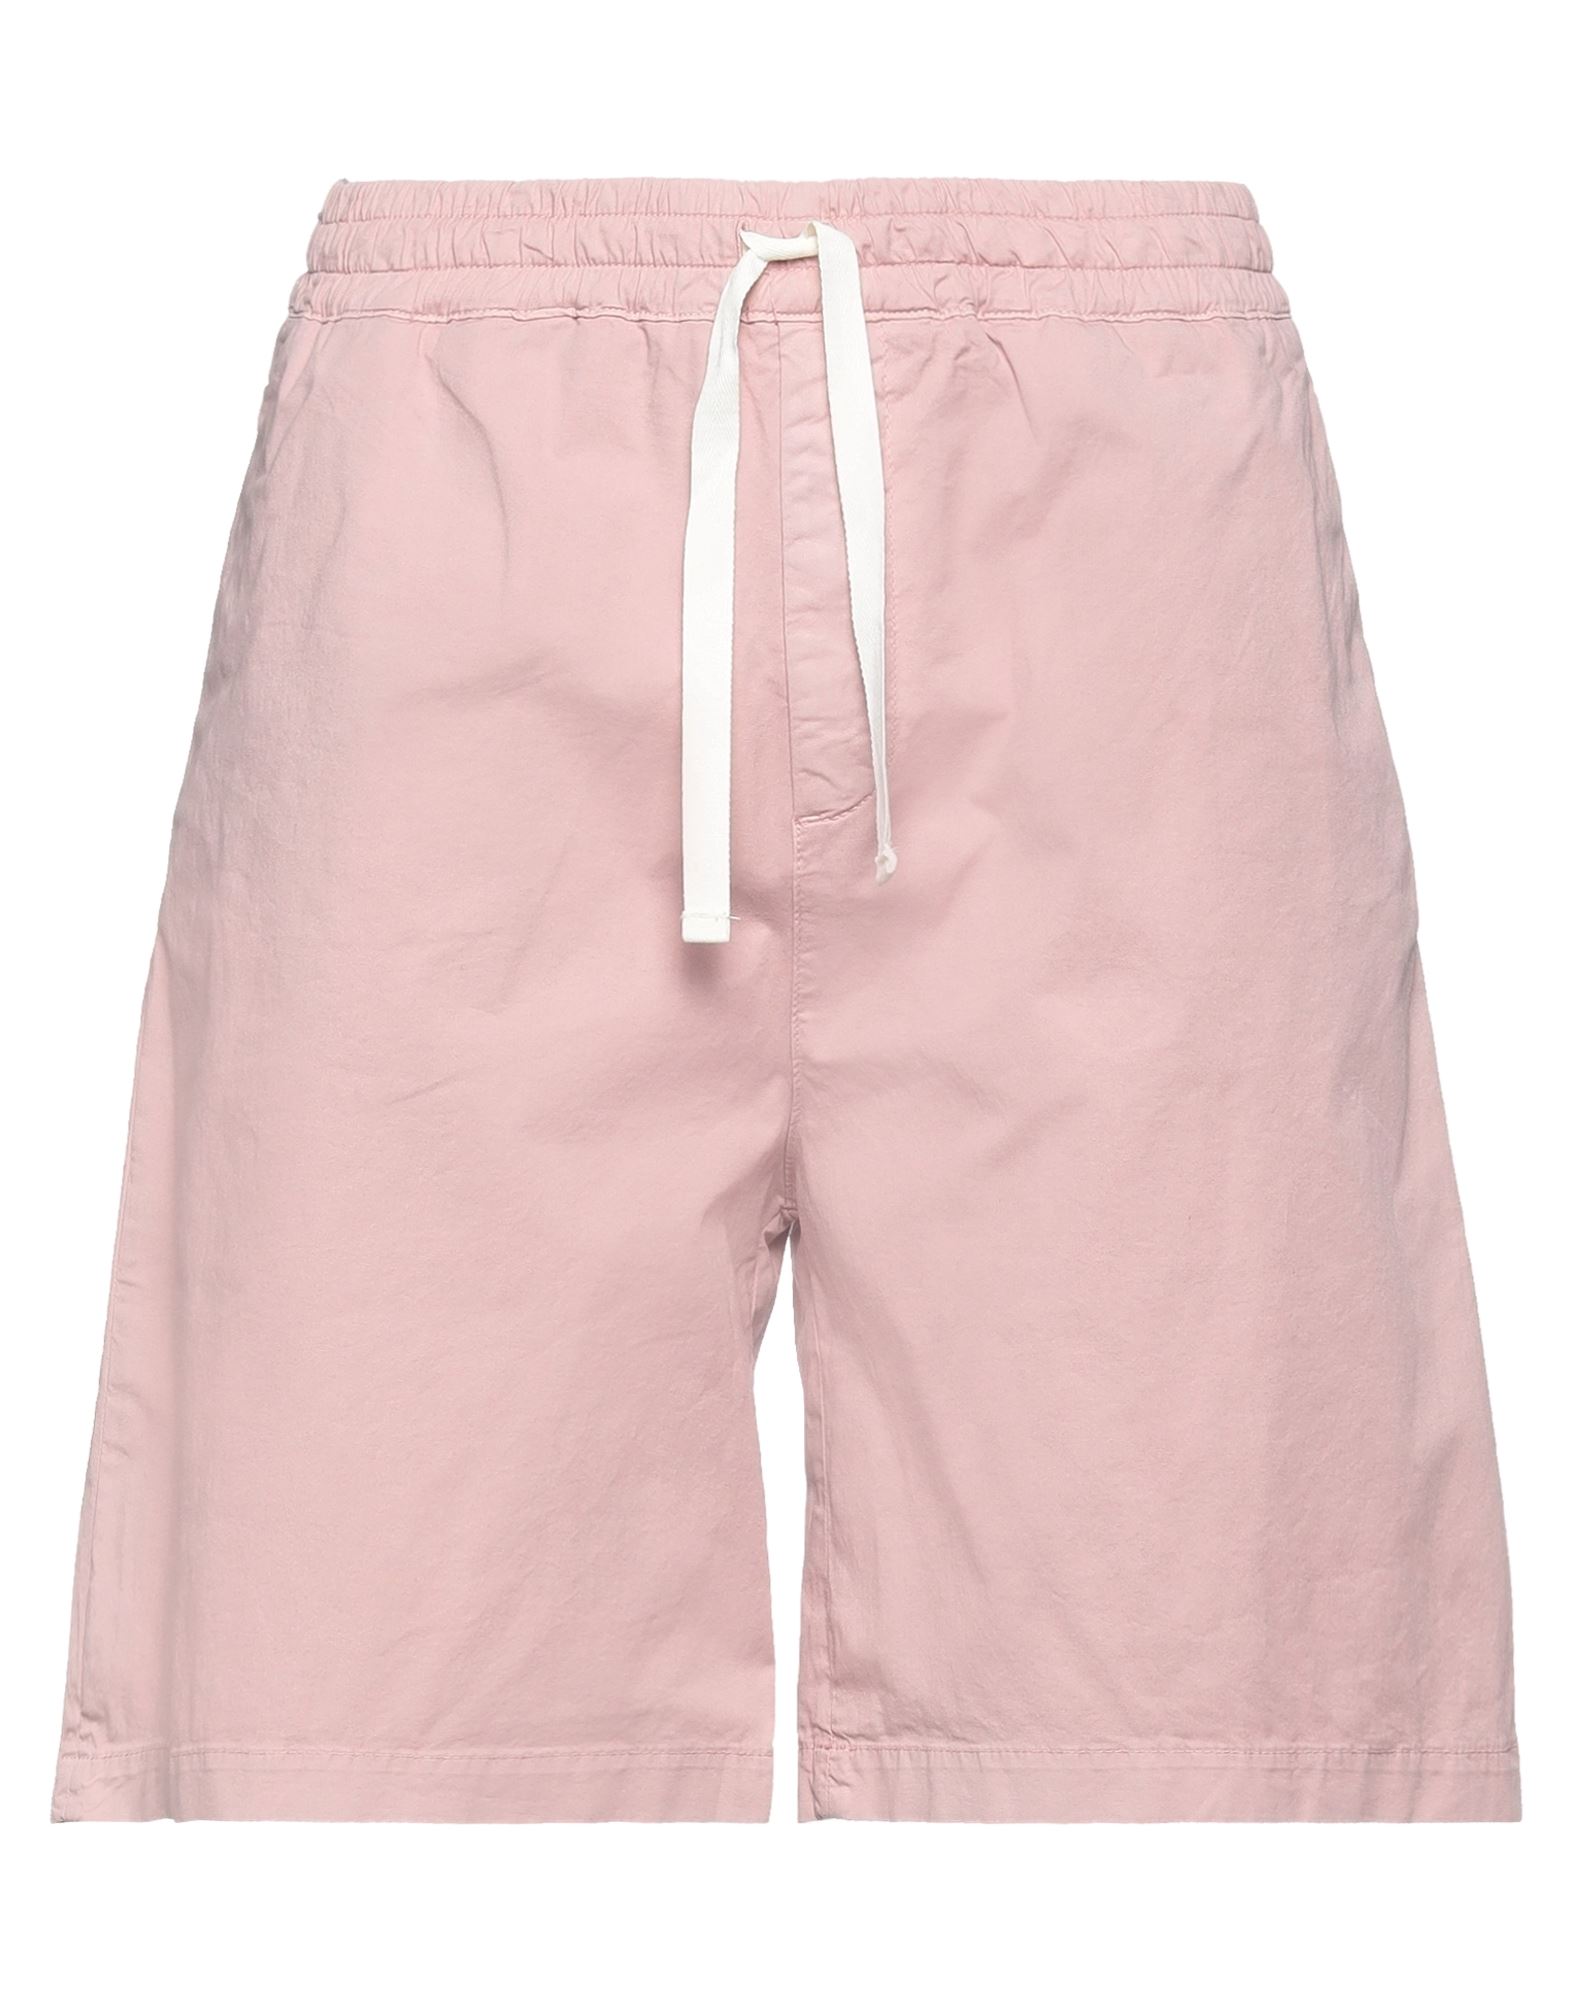 Haikure Man Shorts & Bermuda Shorts Pink Size 32 Cotton, Elastane